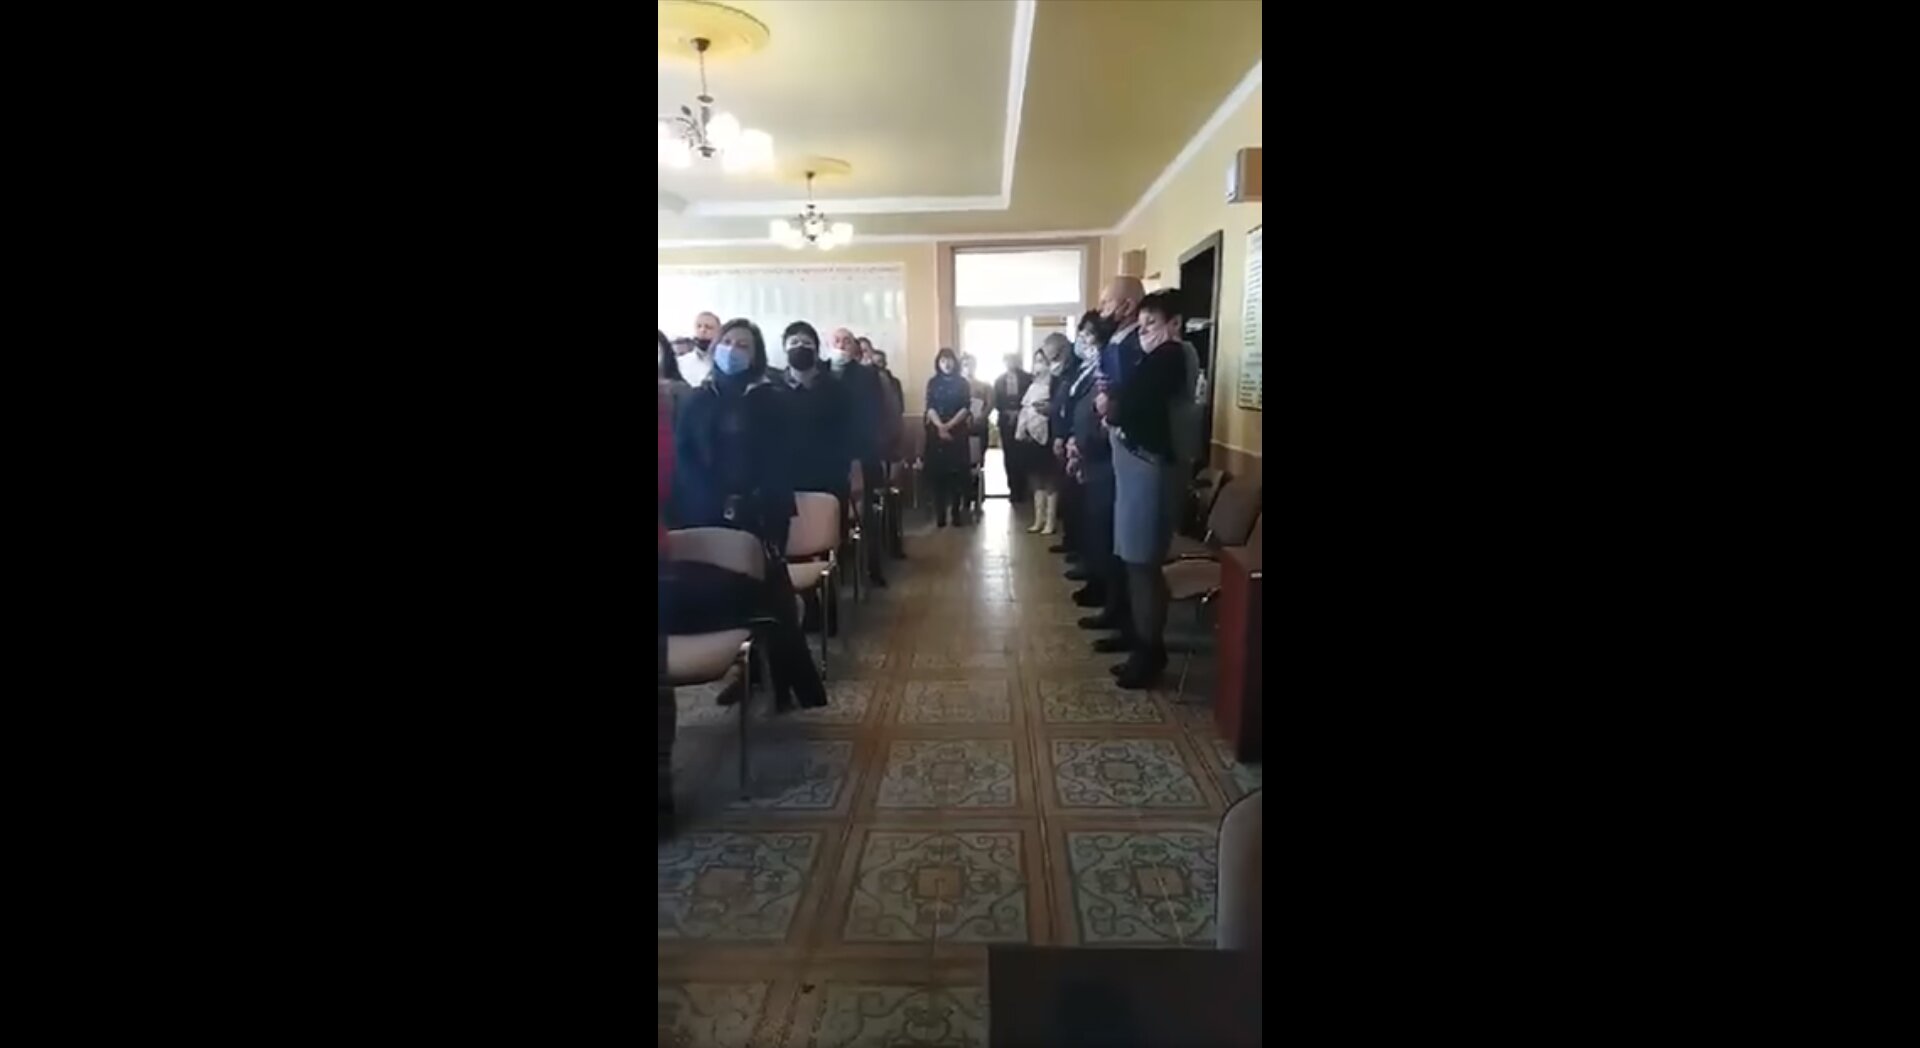 Закарпатские депутаты после присяги спели гимн Венгрии, а не Украины: видео вызвало скандал 